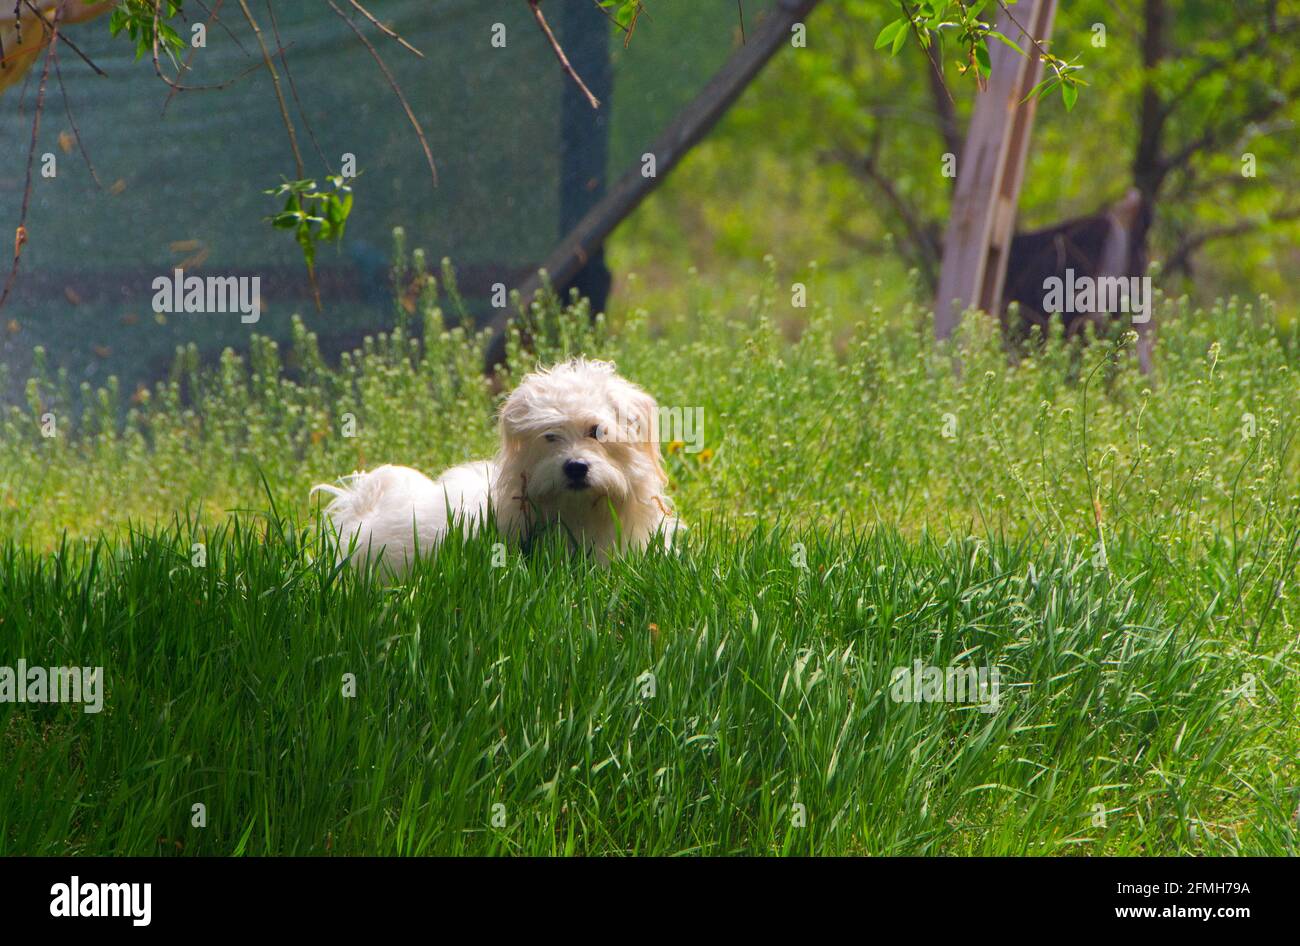 Giocoso piccolo cane bianco, Coton de Tulear - immagine Foto Stock